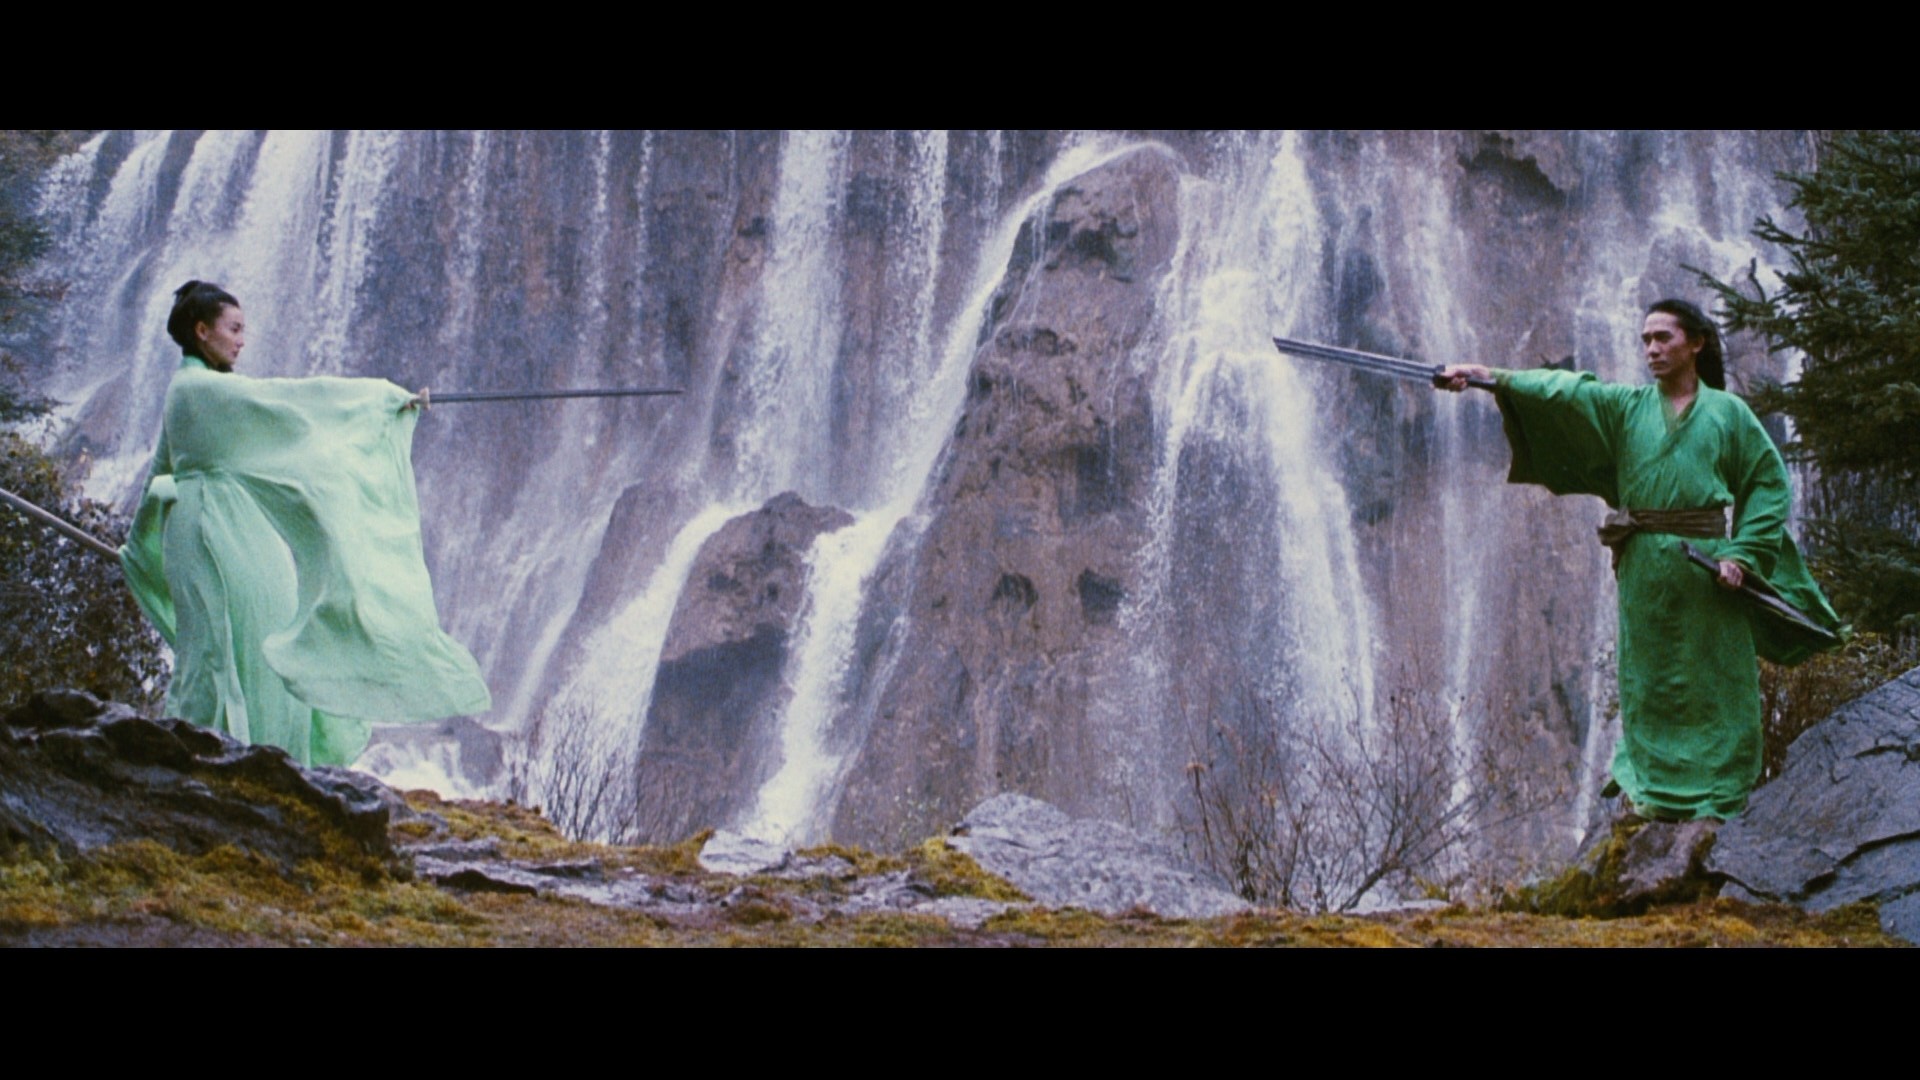 1920x1080 Broken Sword & Flying Snow, Screenshot from "Hero". "Hero" is